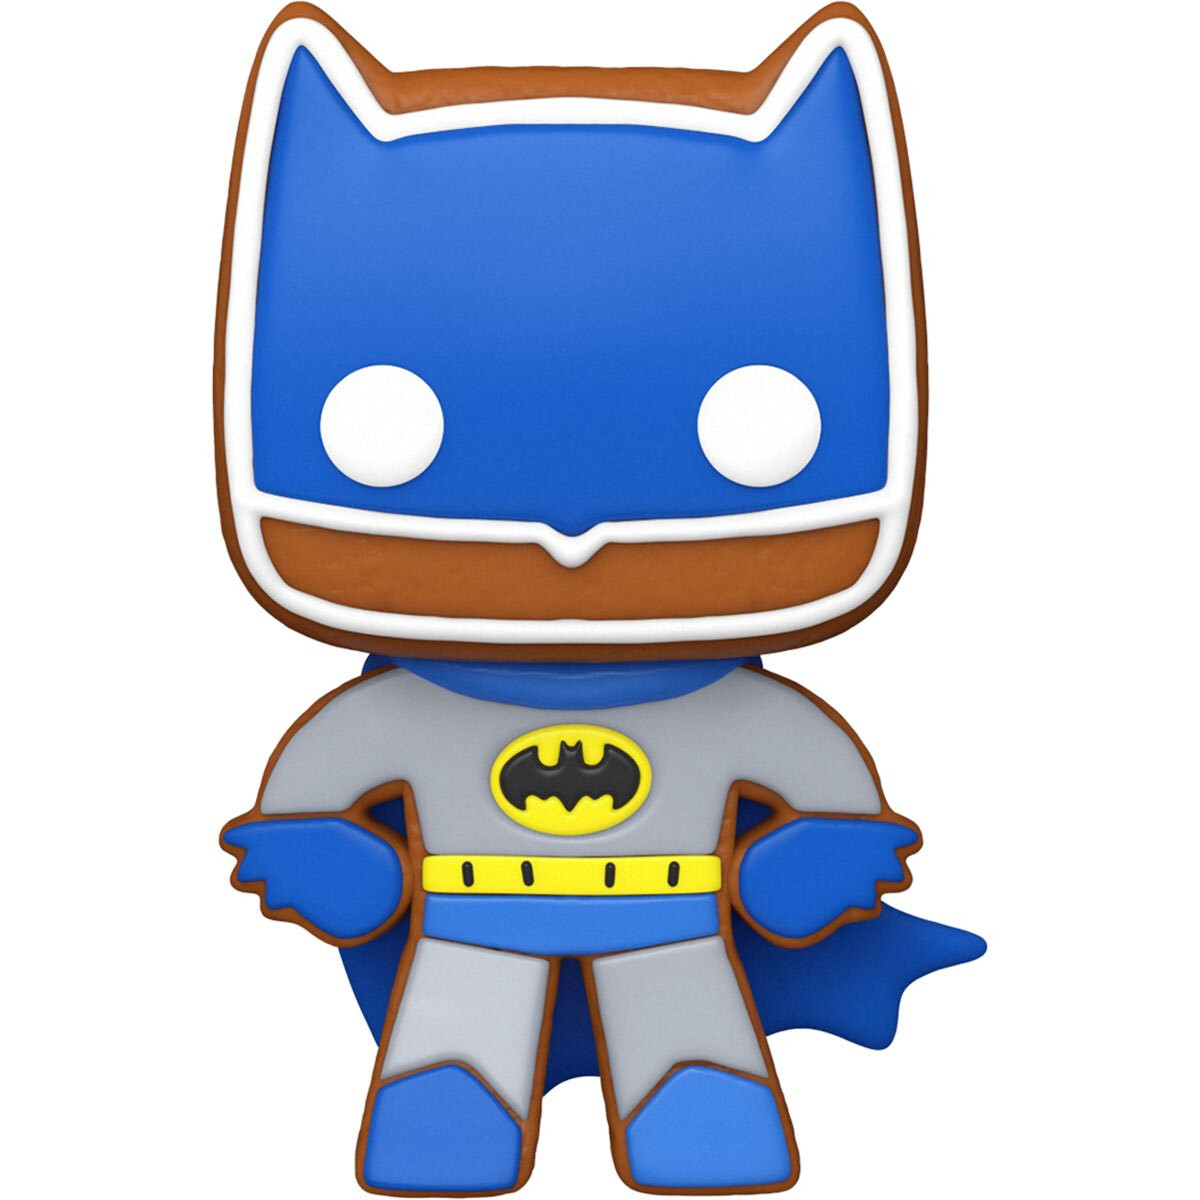 PRE-ORDER Funko DC Comics Super Heroes Gingerbread Batman Pop! Vinyl Figure